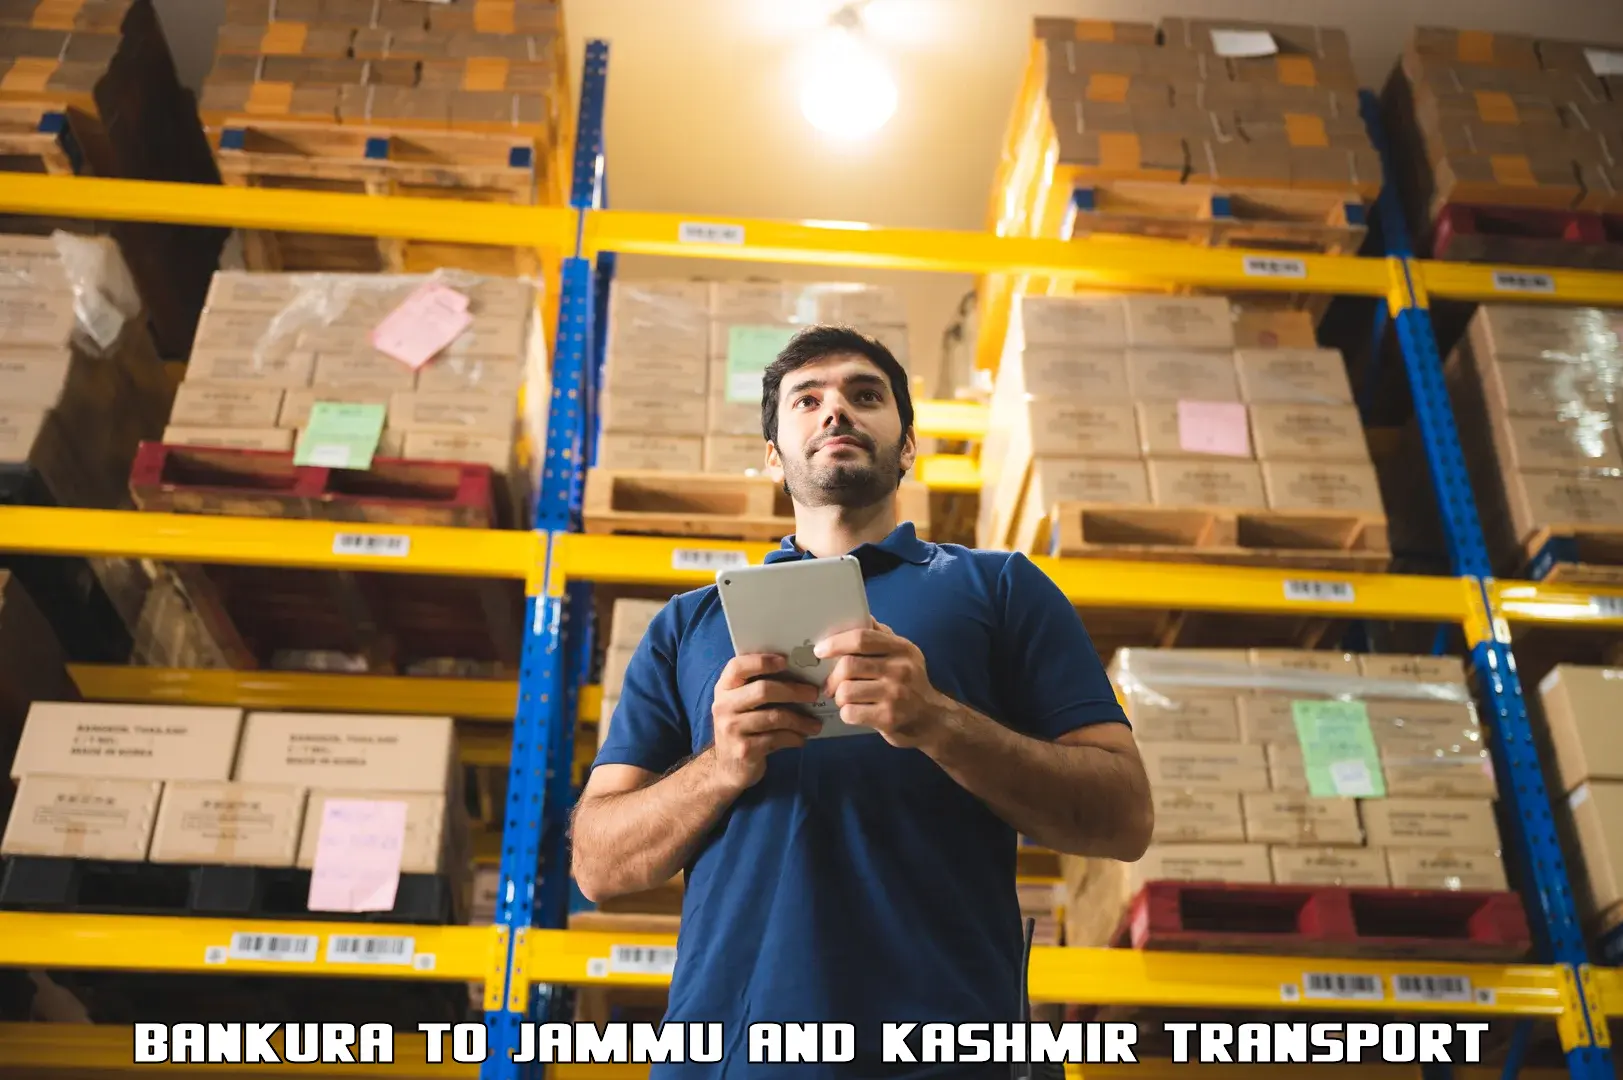 Road transport online services in Bankura to IIT Jammu